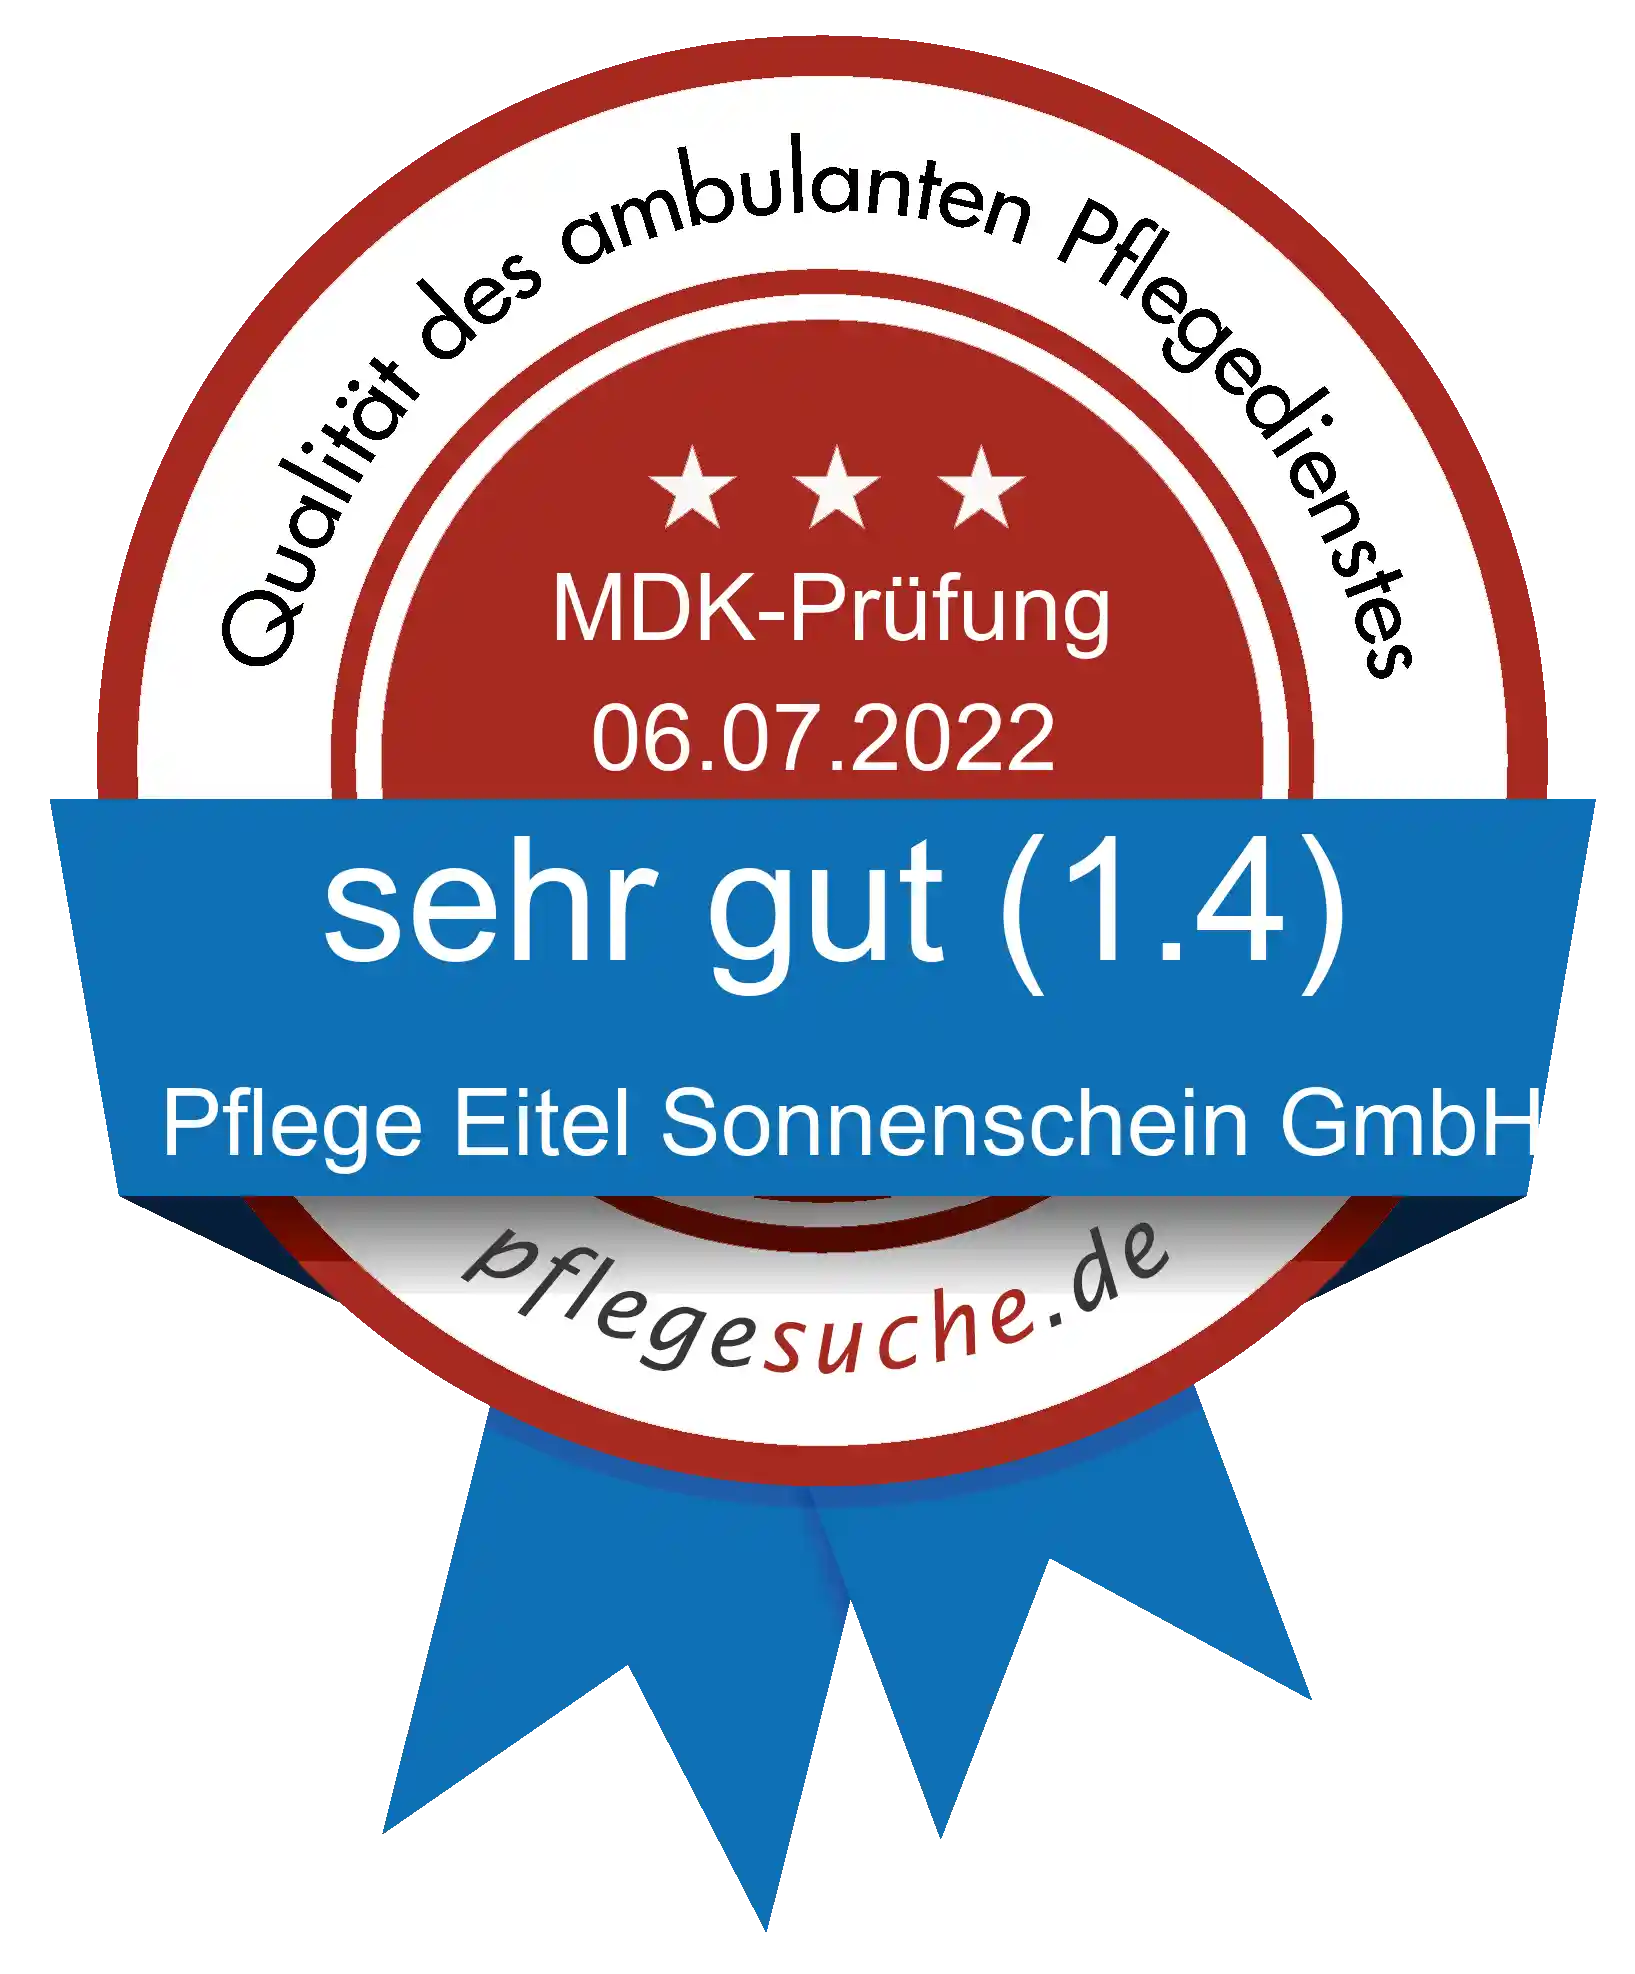 Siegel Benotung: Pflege Eitel Sonnenschein GmbH